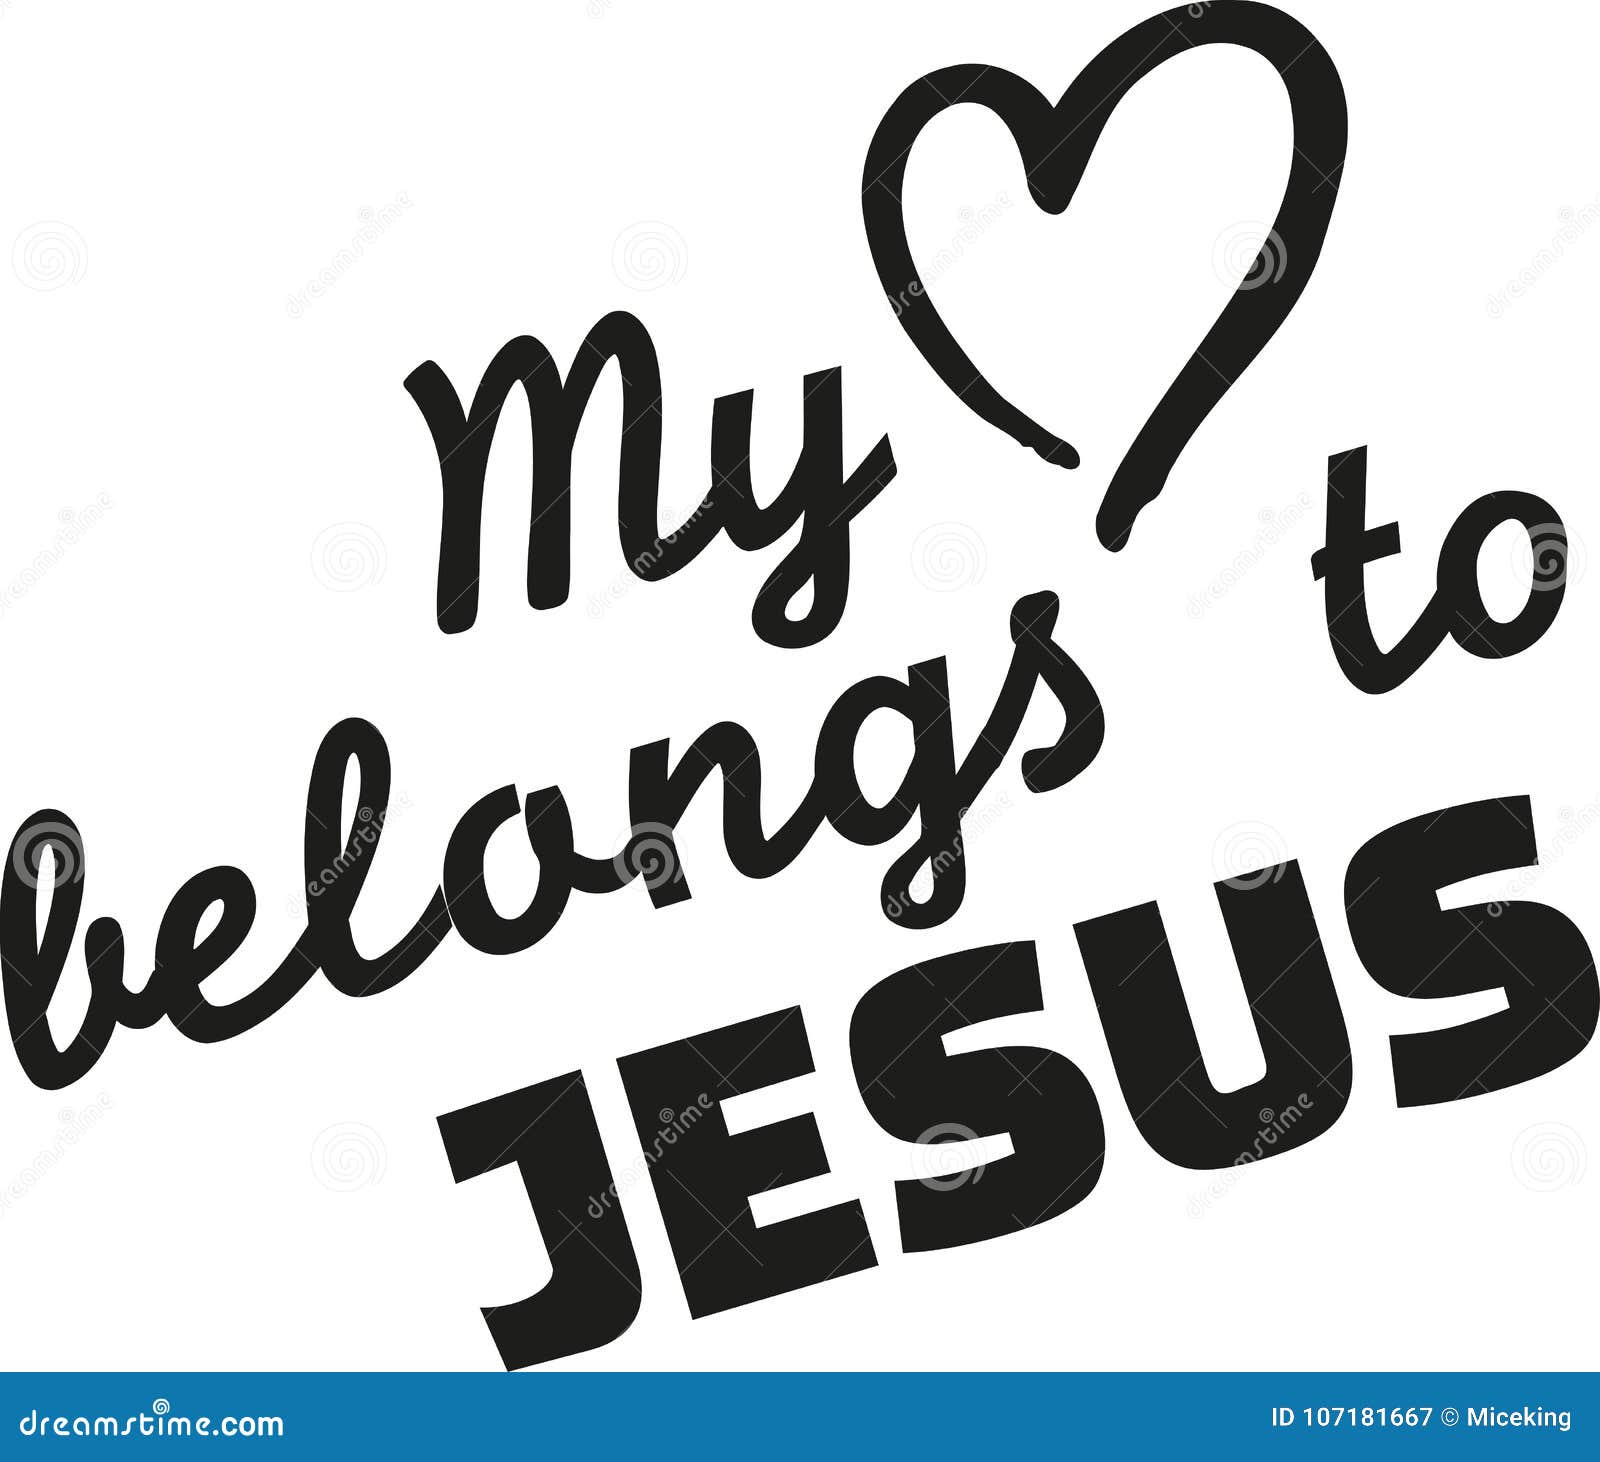 my heart belongs to jesus